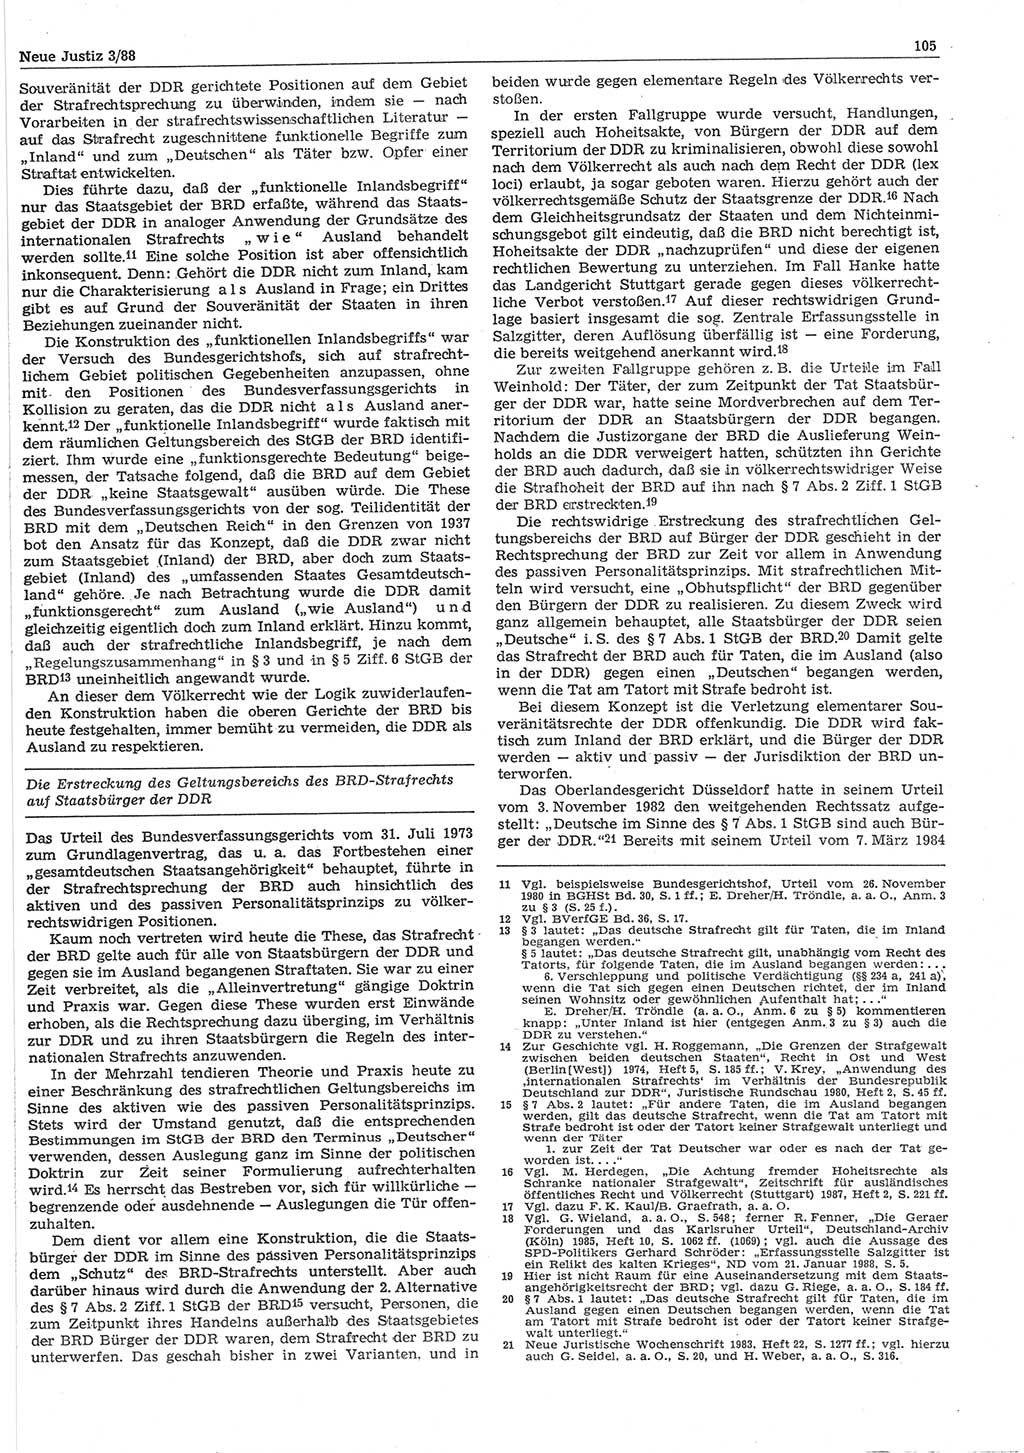 Neue Justiz (NJ), Zeitschrift für sozialistisches Recht und Gesetzlichkeit [Deutsche Demokratische Republik (DDR)], 42. Jahrgang 1988, Seite 105 (NJ DDR 1988, S. 105)